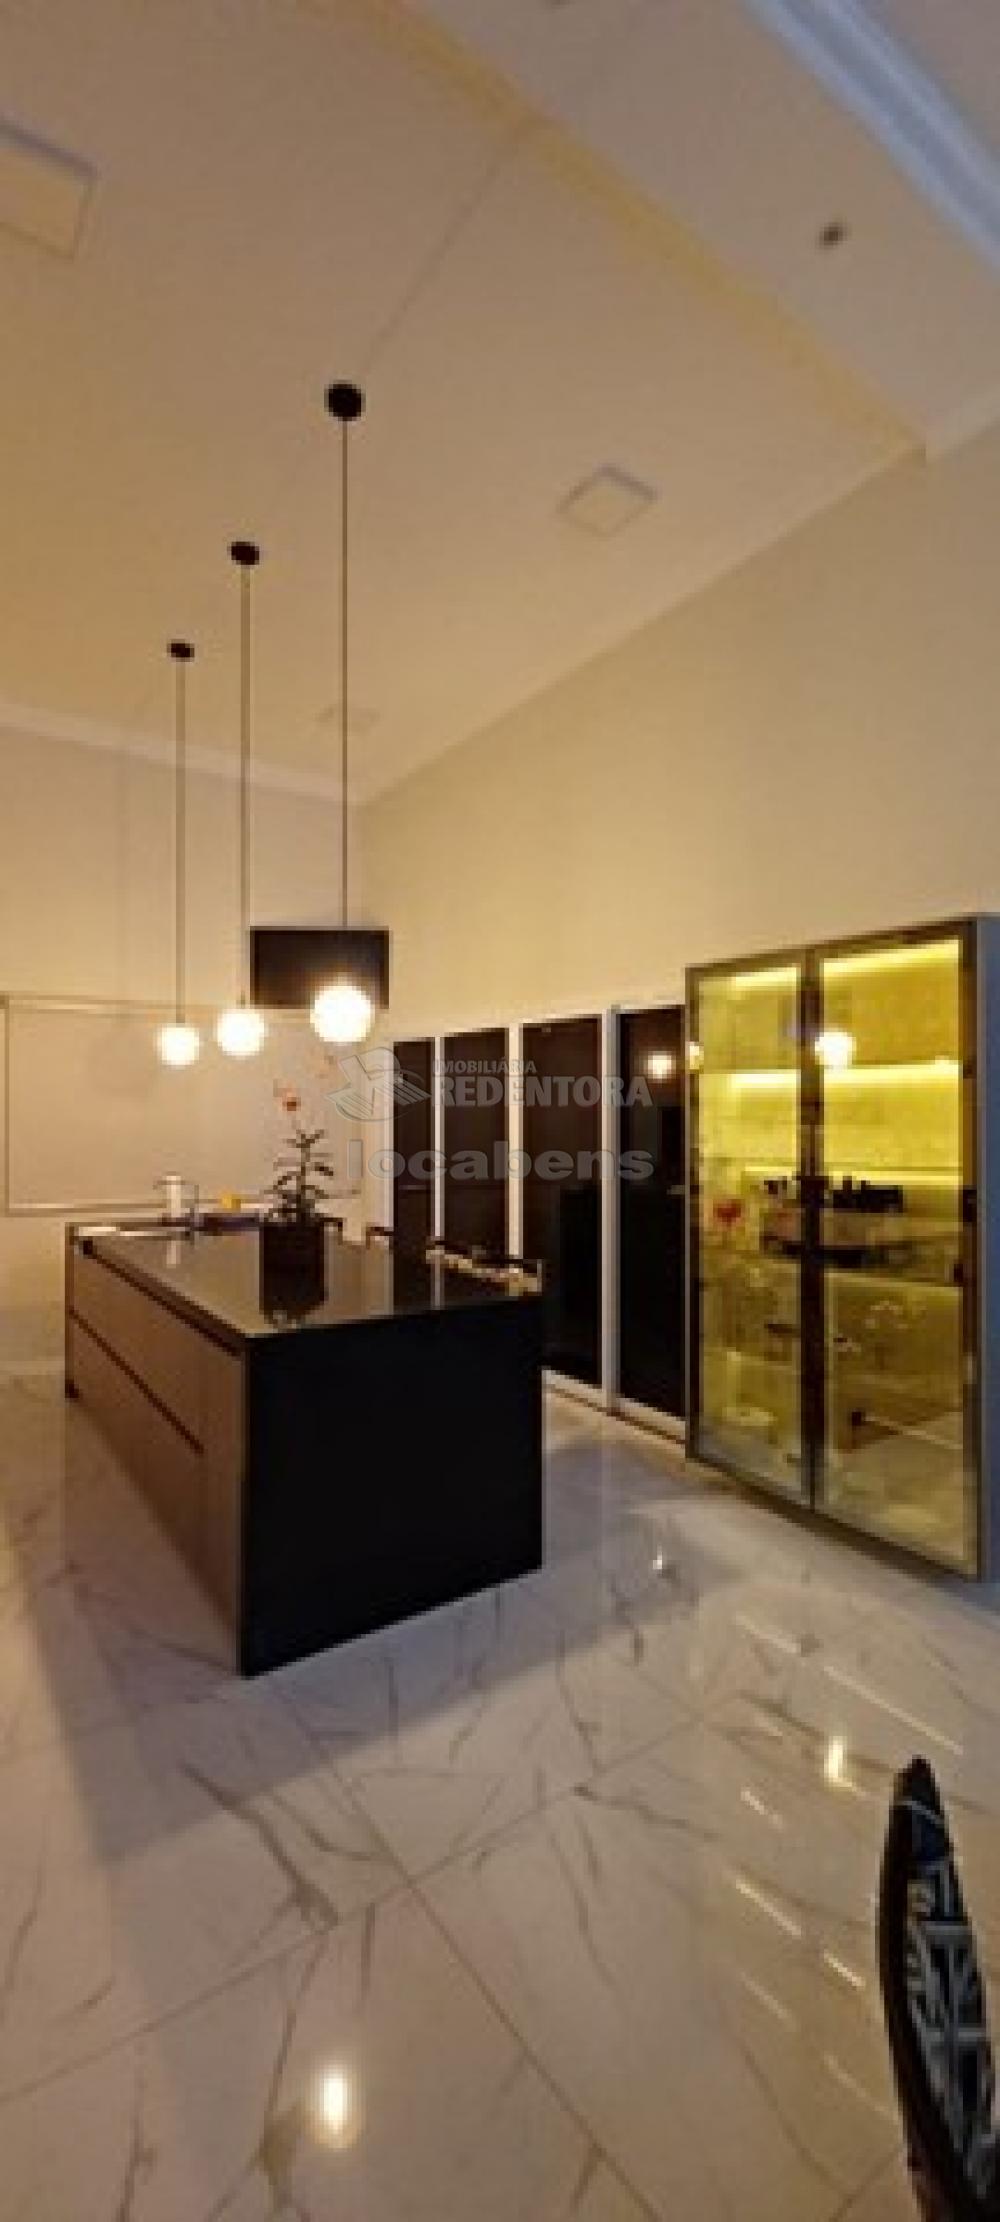 Comprar Casa / Condomínio em Mirassol apenas R$ 900.000,00 - Foto 5